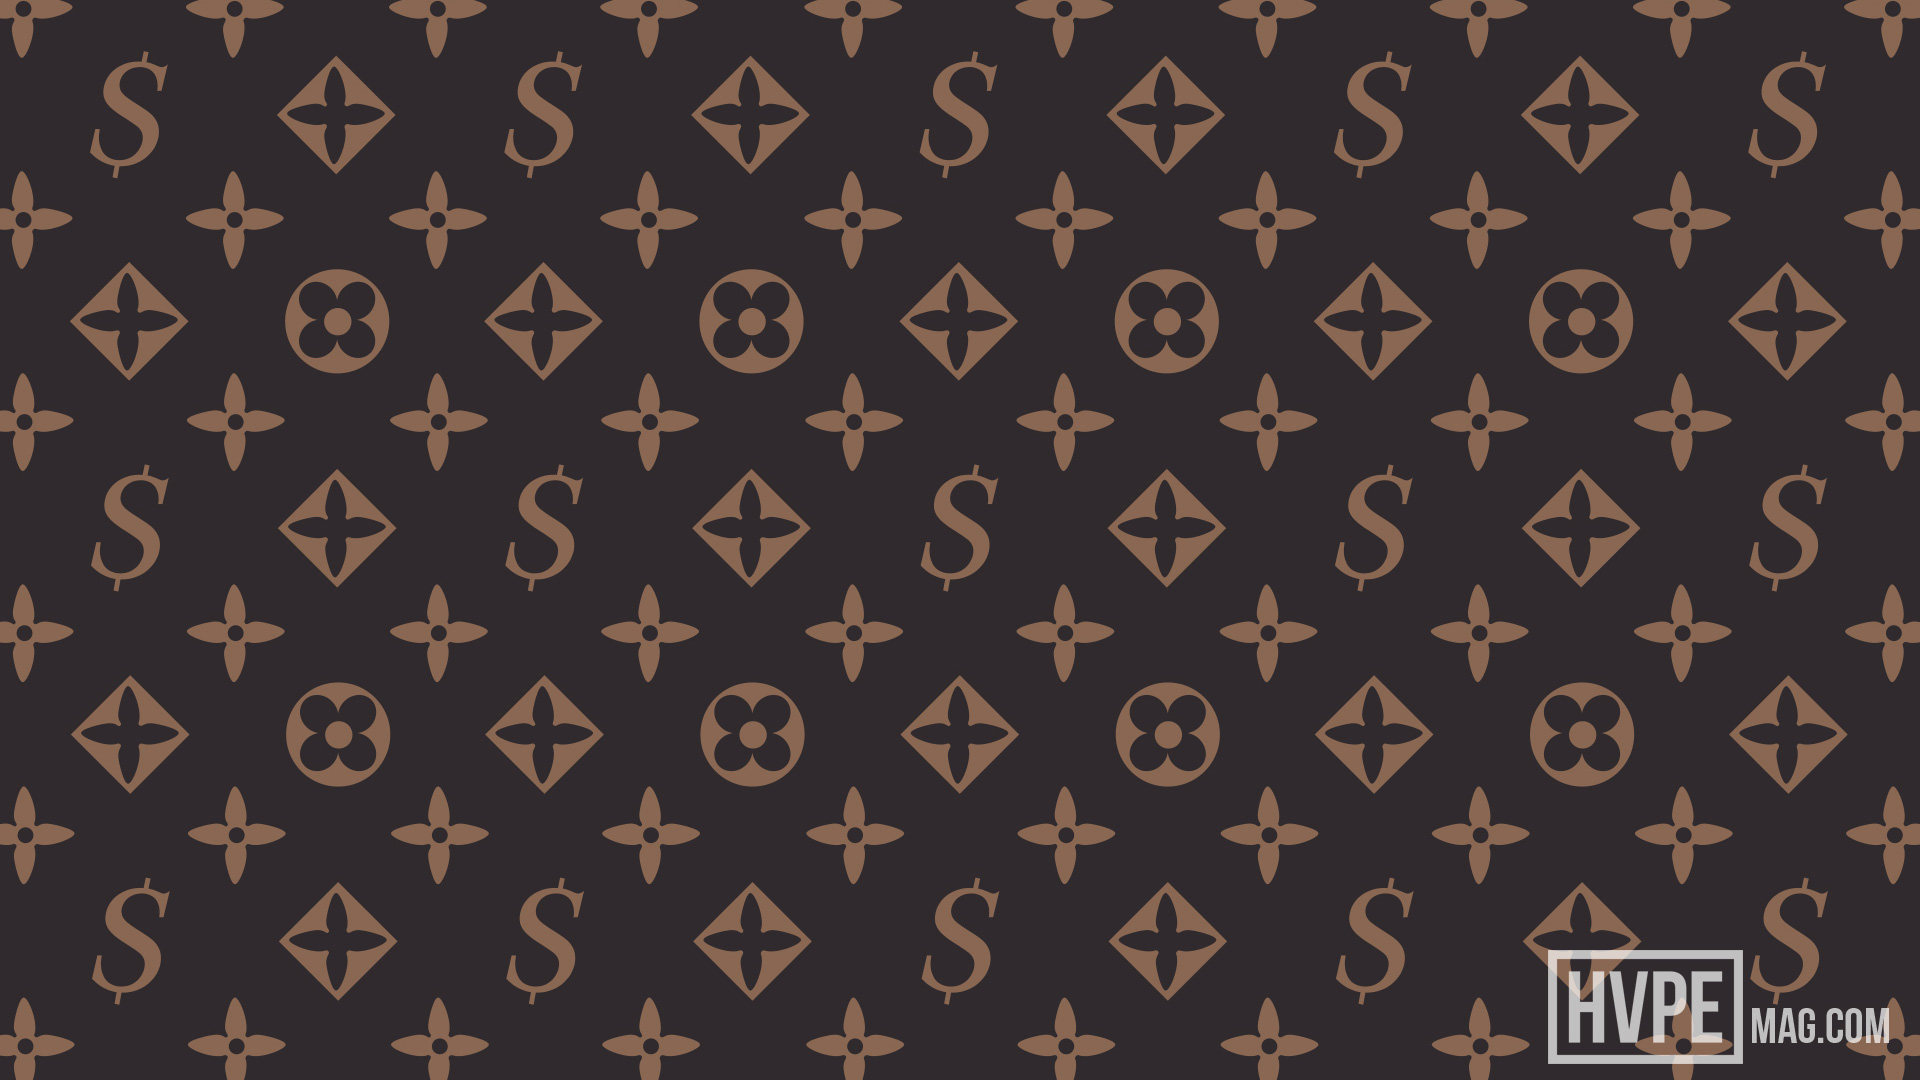 Supreme X Louis Vuitton Wallpaper Download